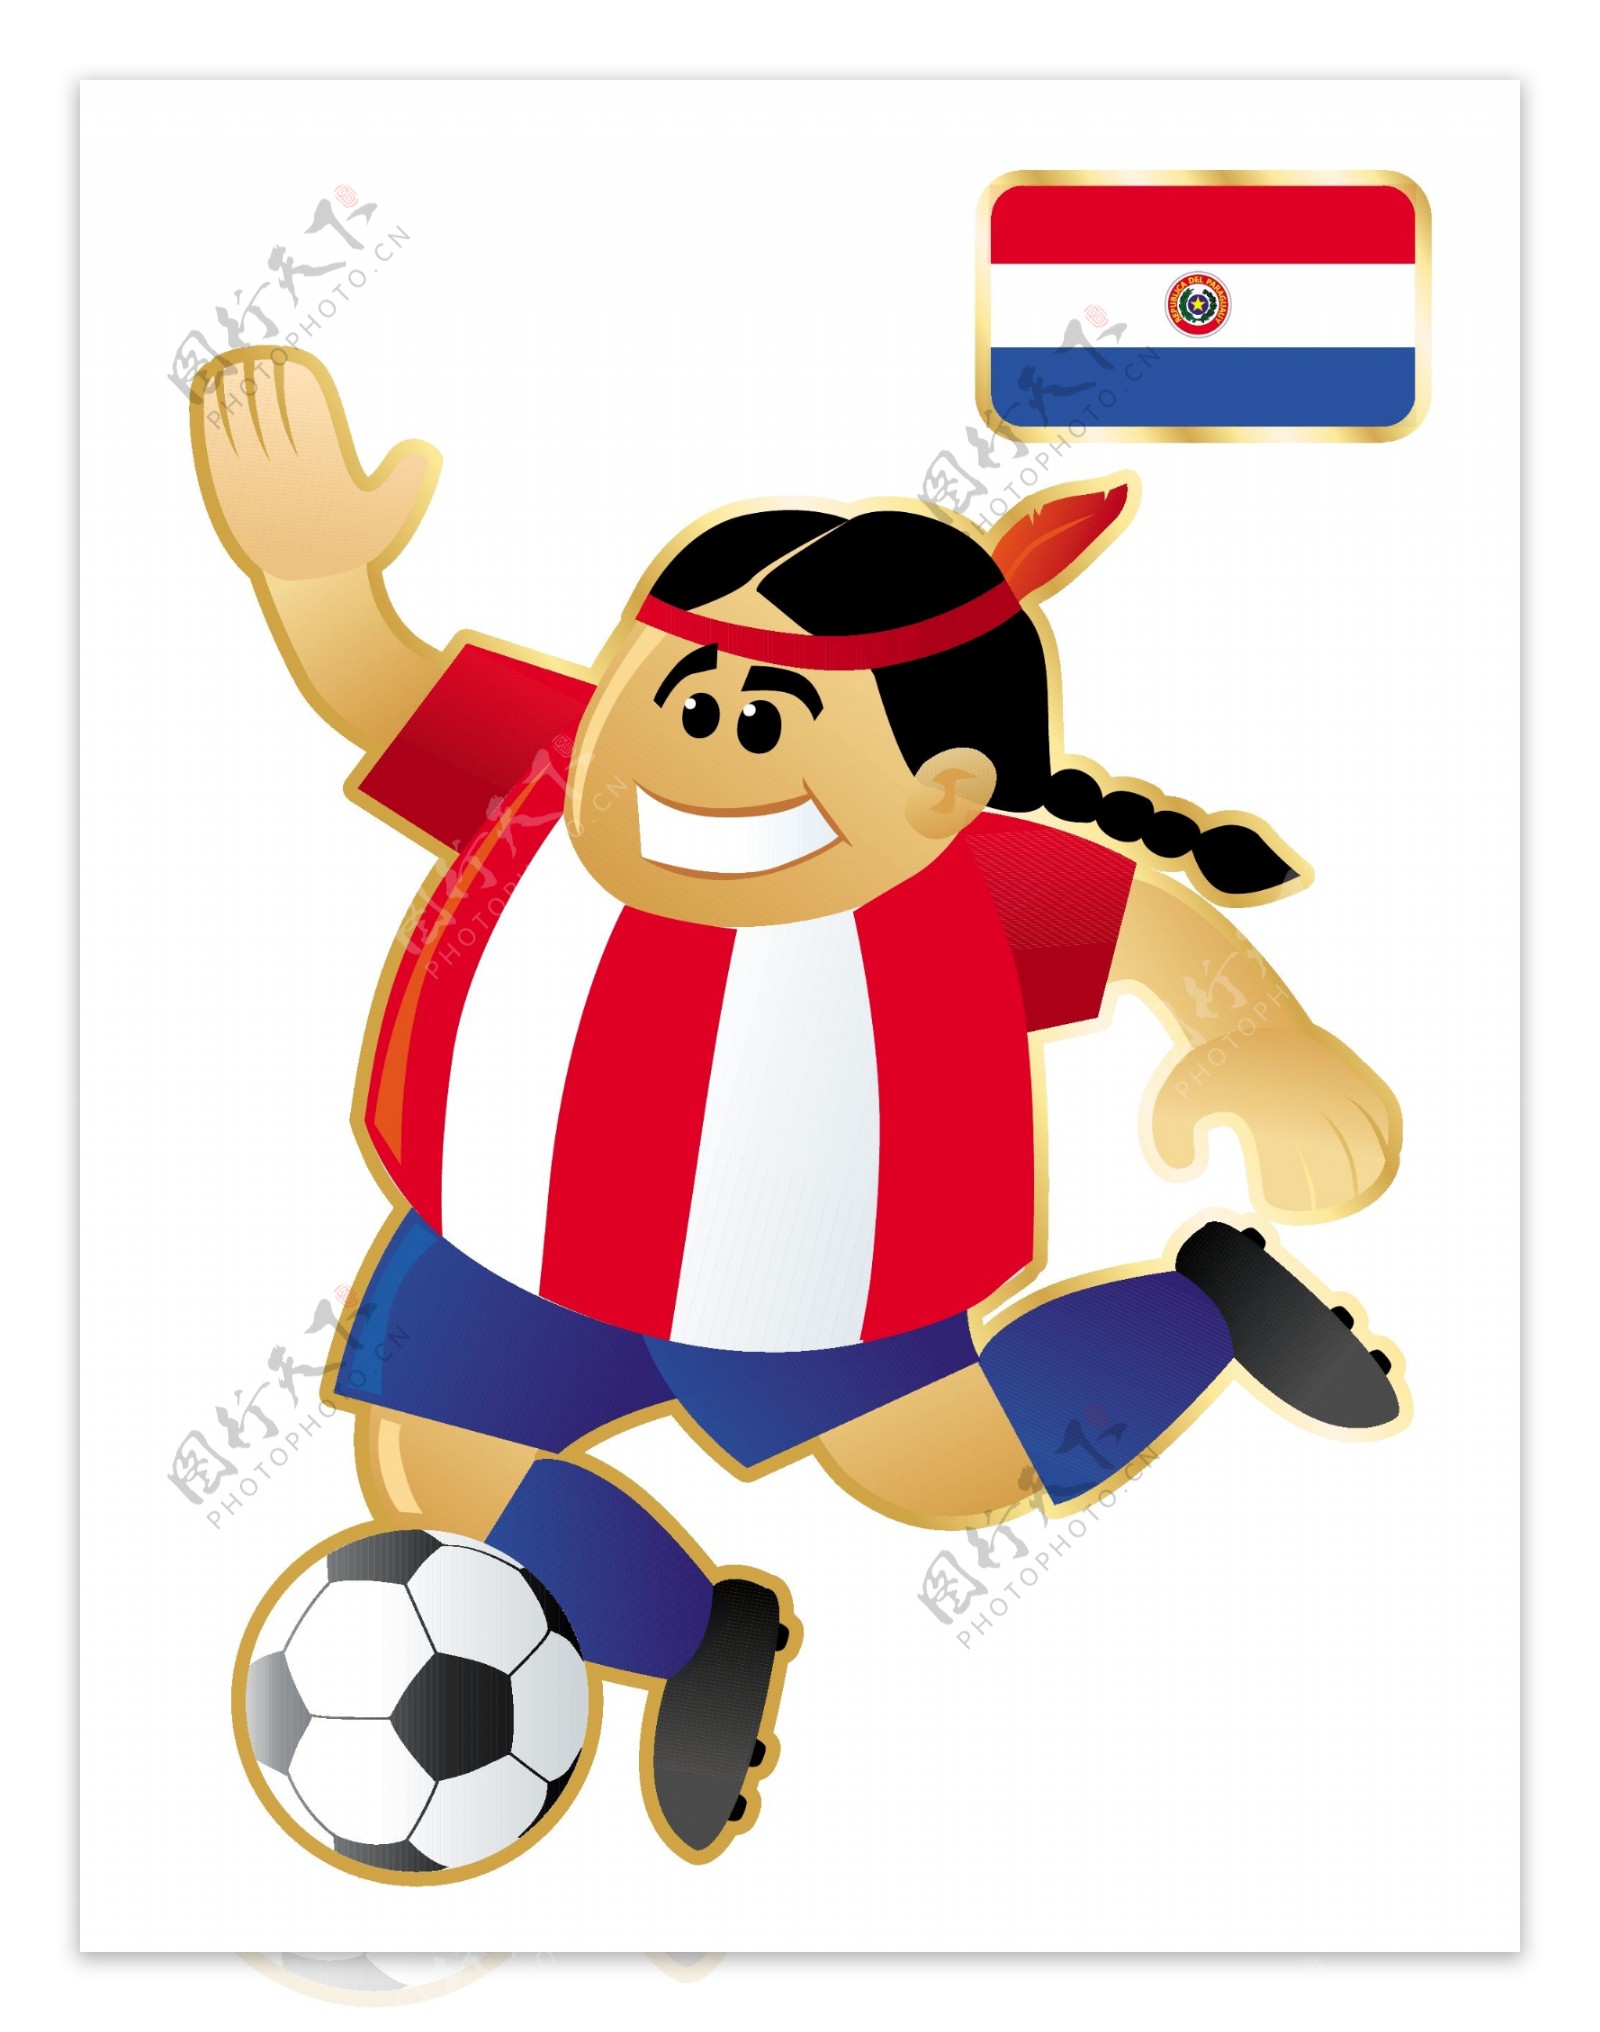 搞笑不同国家足球卡通人物形象矢量图